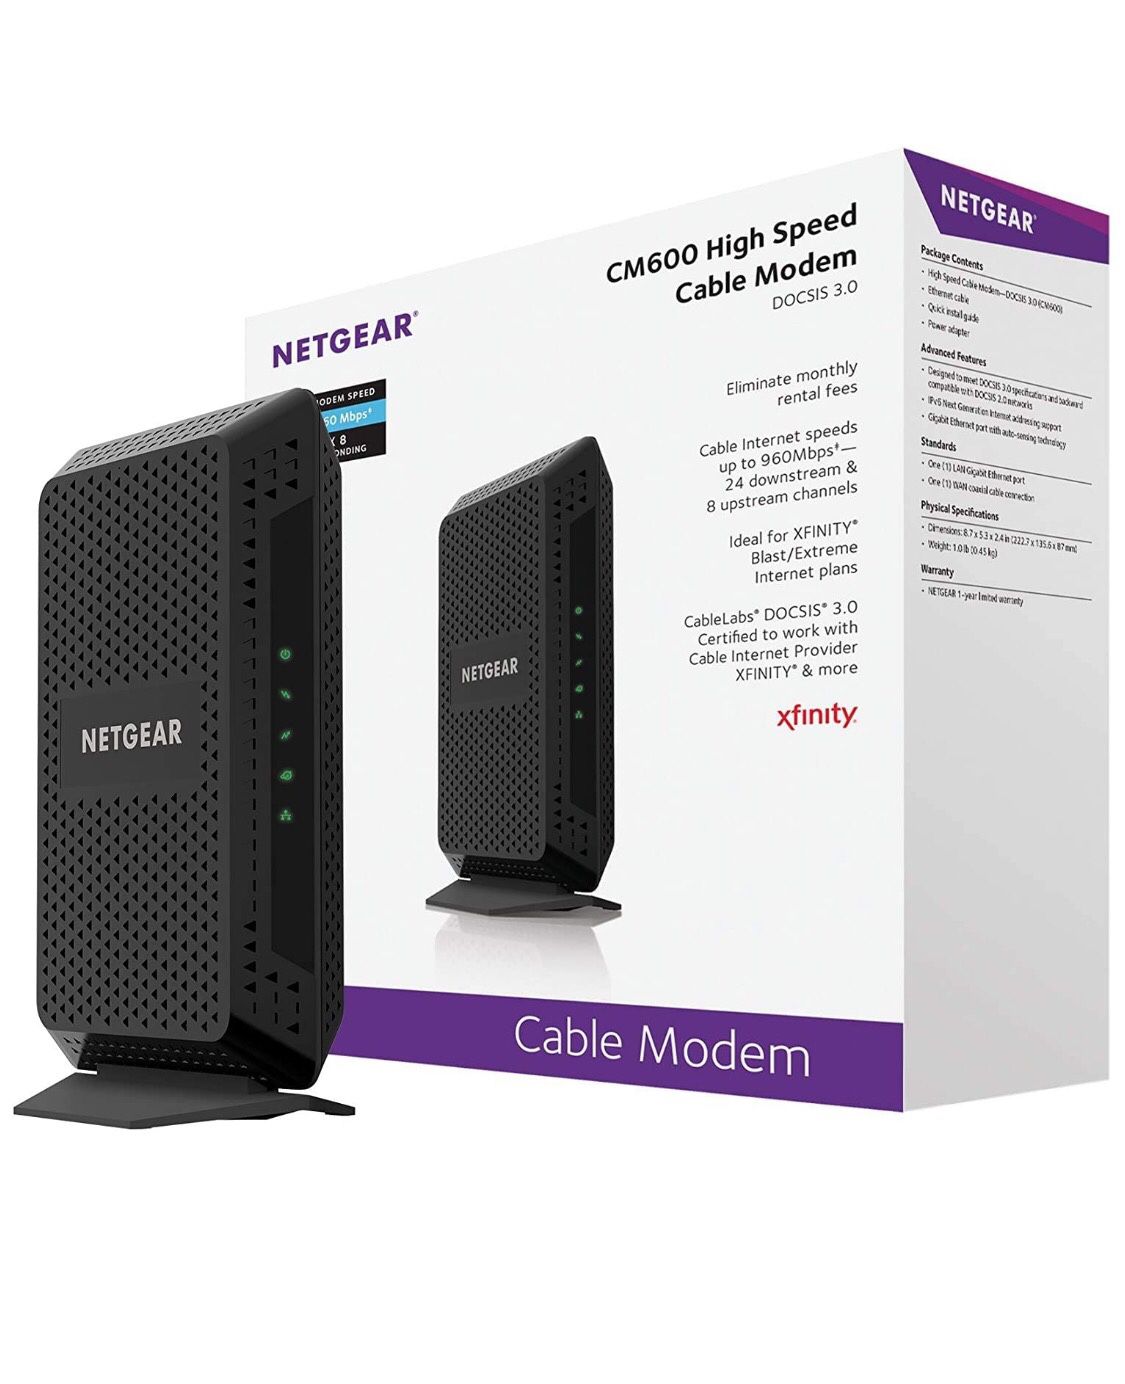 NETGEAR Cable Modem CM600